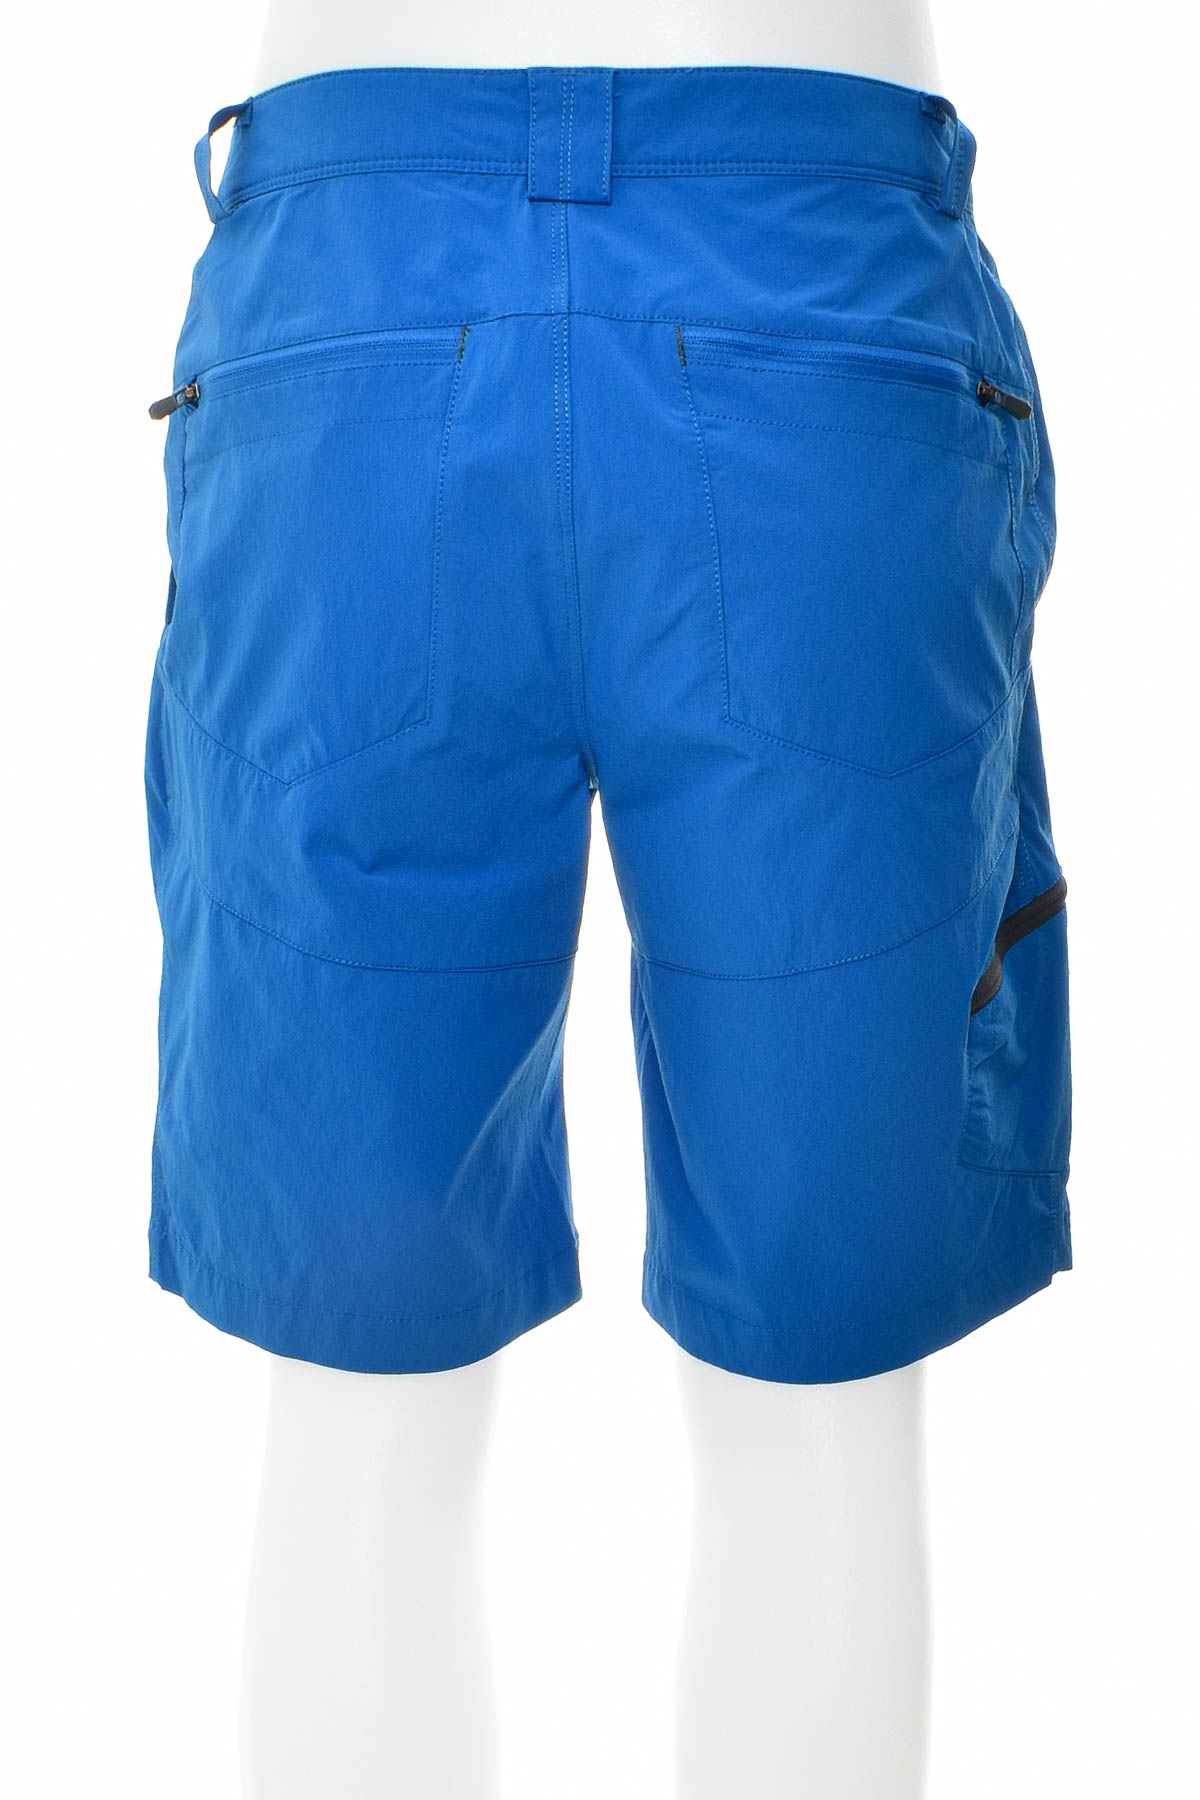 Men's shorts - McKinley - 1